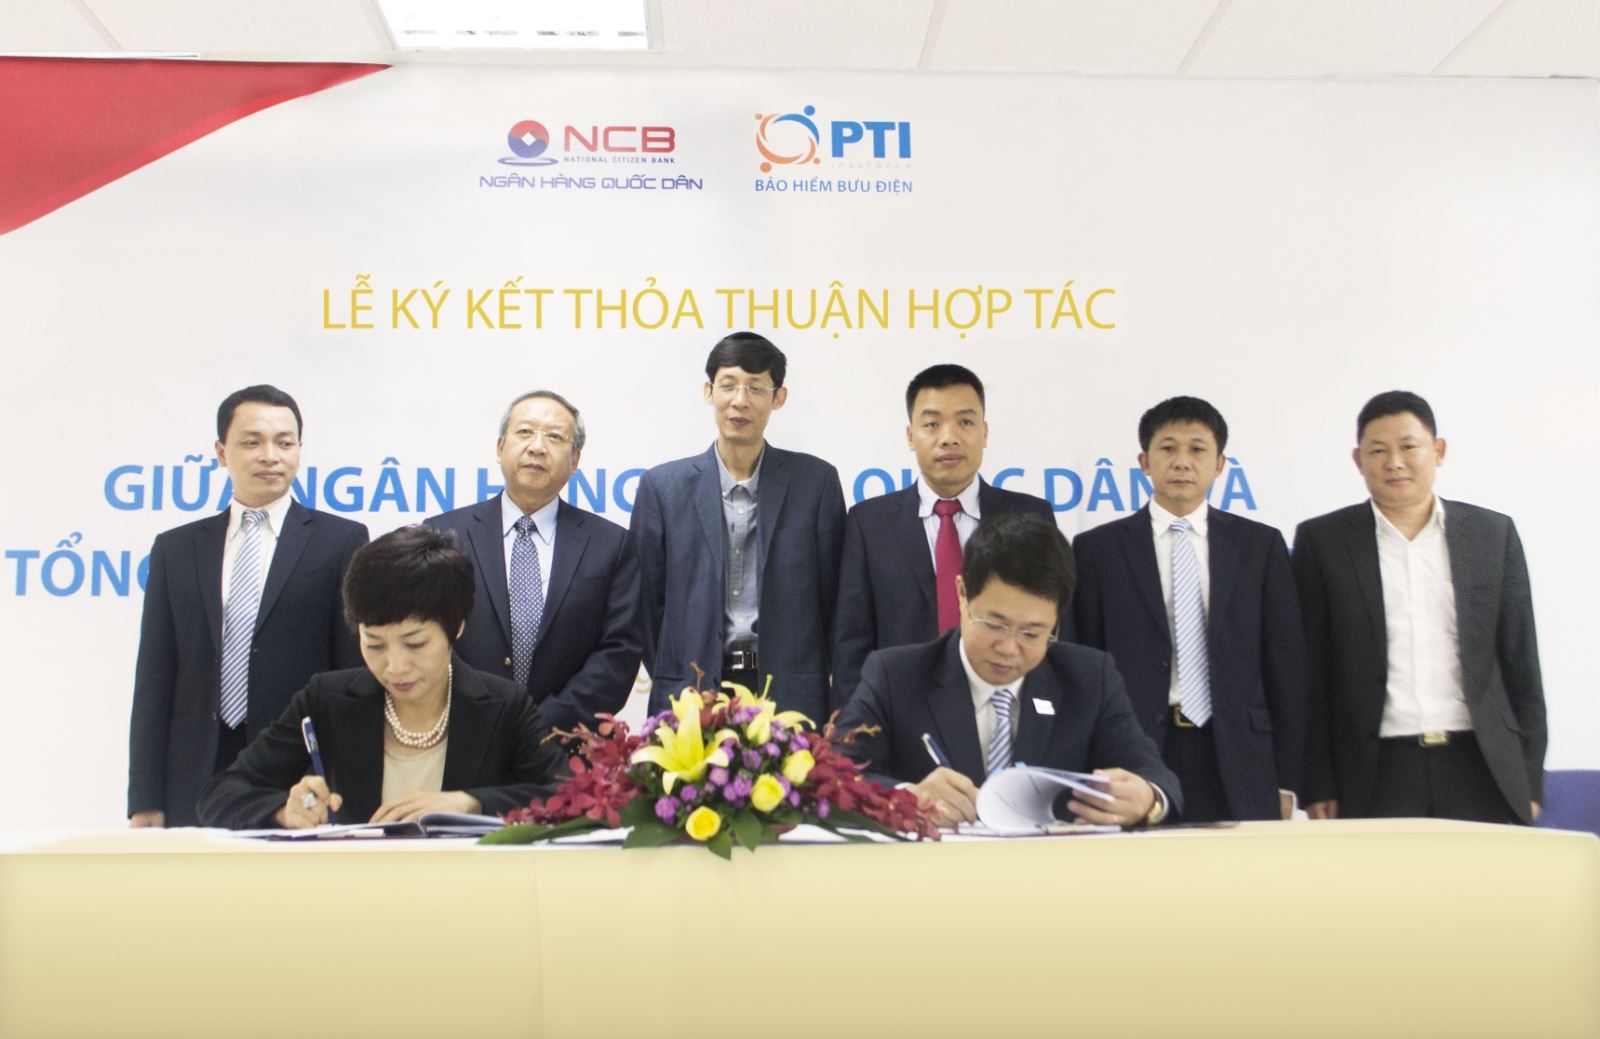 NCB và PTI đã ký kết hợp đồng hợp tác tại Hà Nội